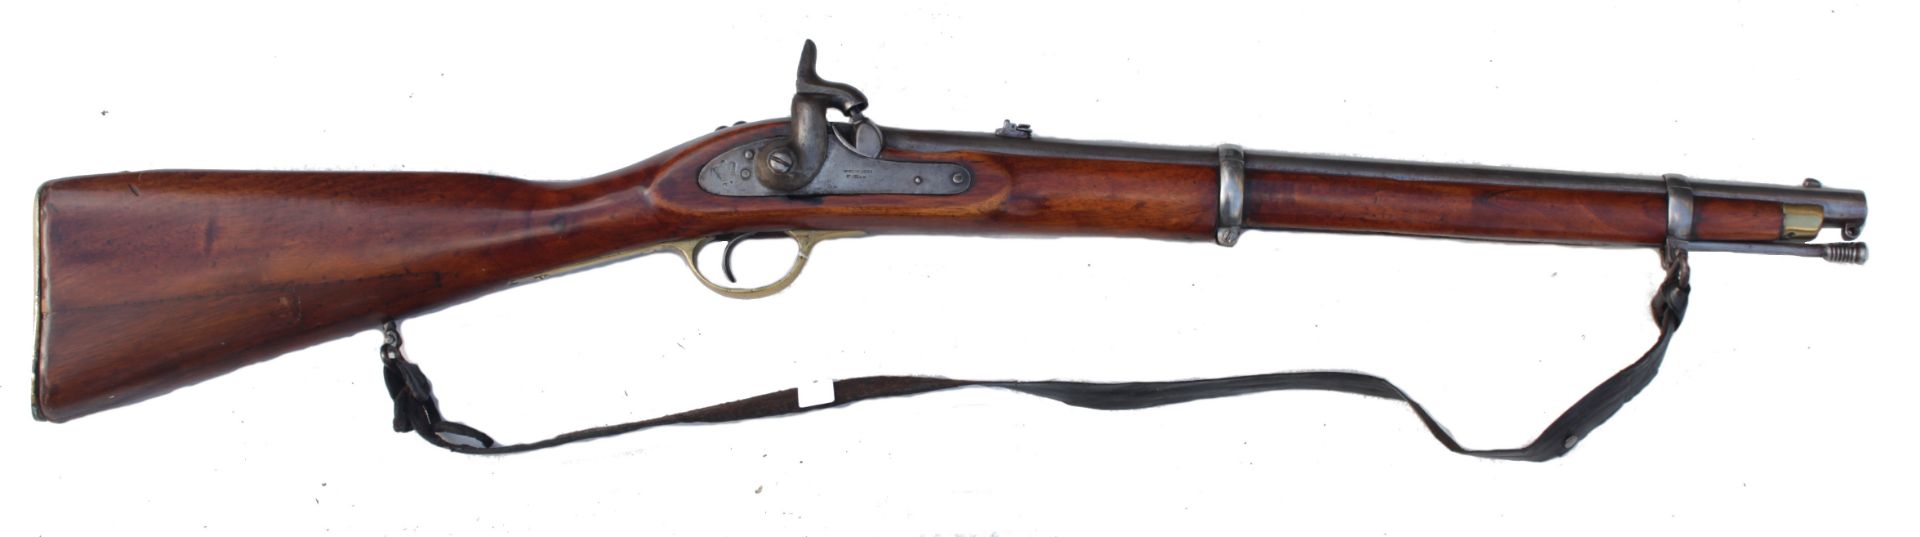 Enfield Carbine, wohl britisch-indisch, 2. H. 19. Jhd.